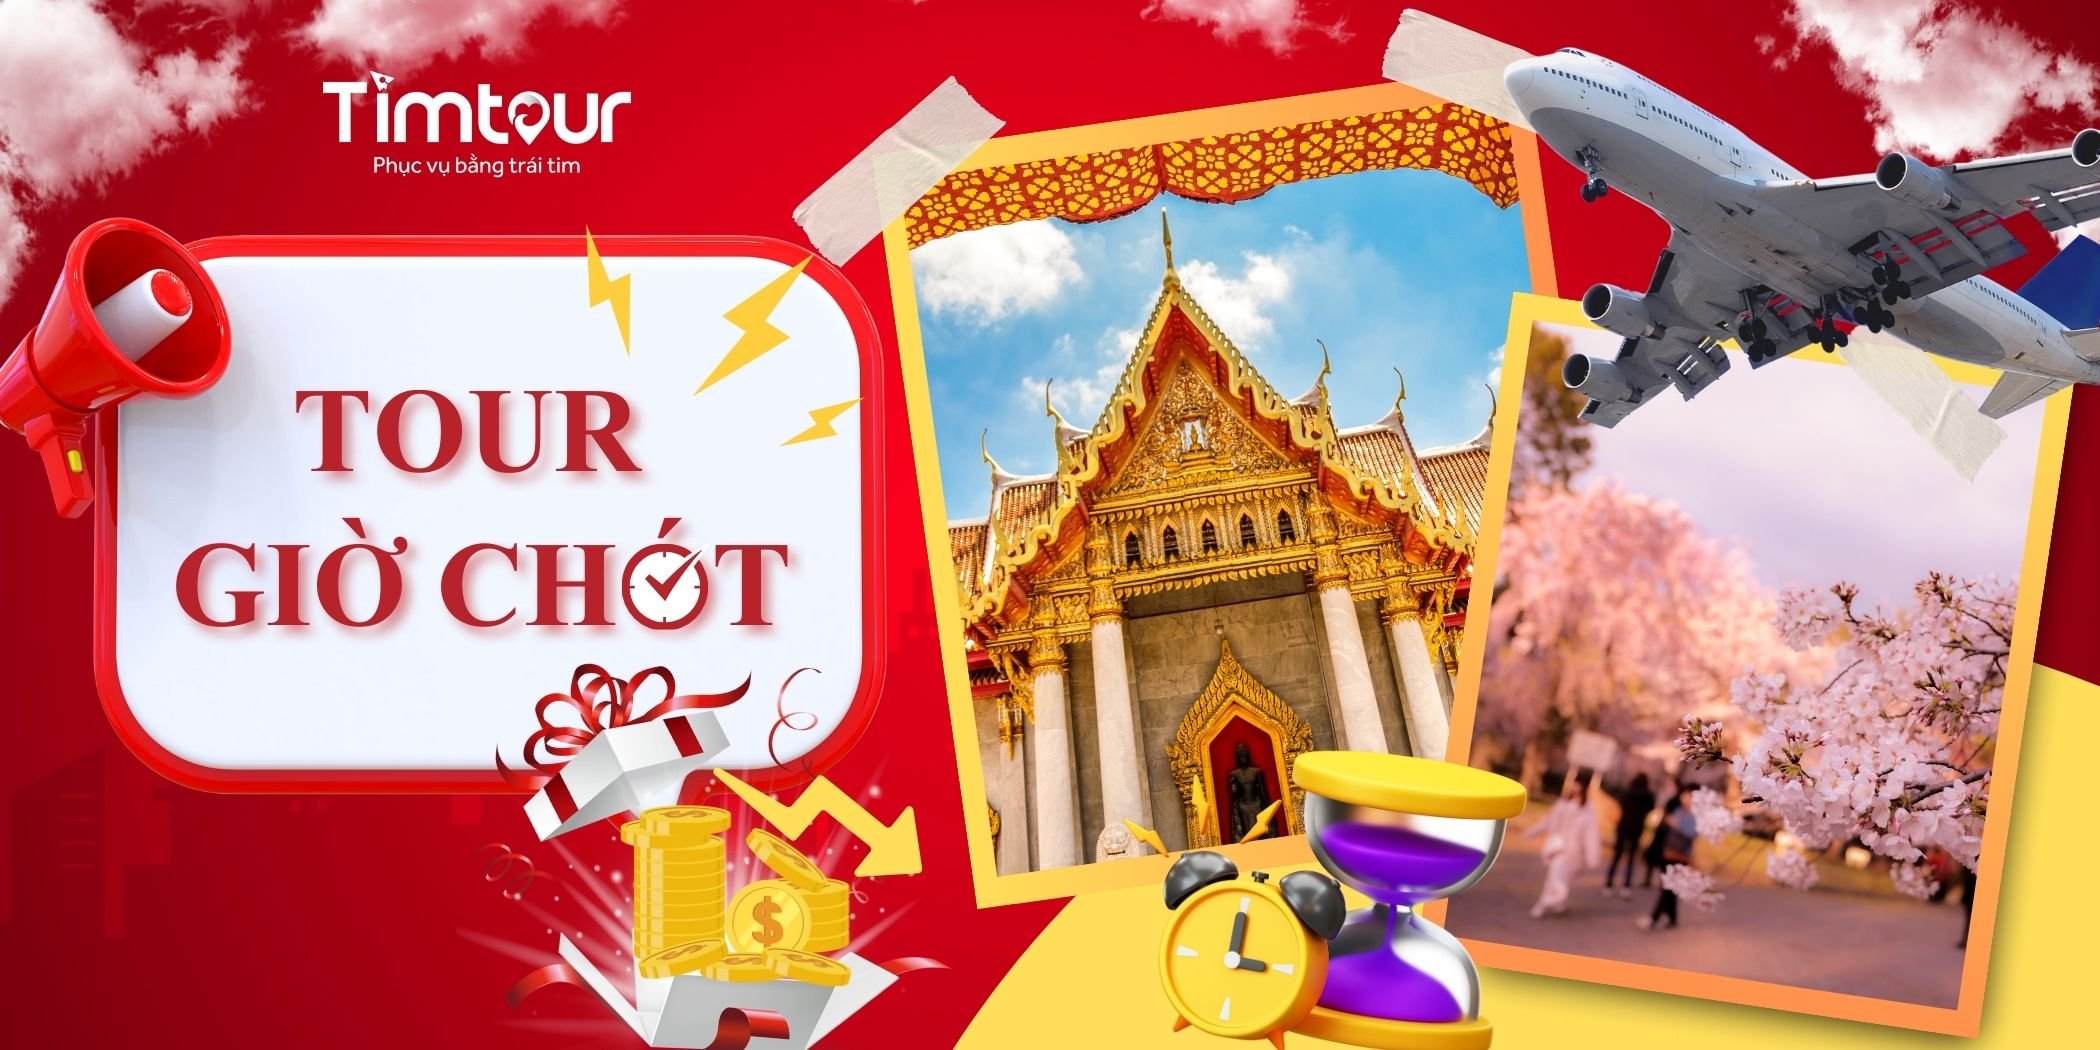 TimTour - Hệ thống đặt tour trực tuyến dành cho người Việt - 5